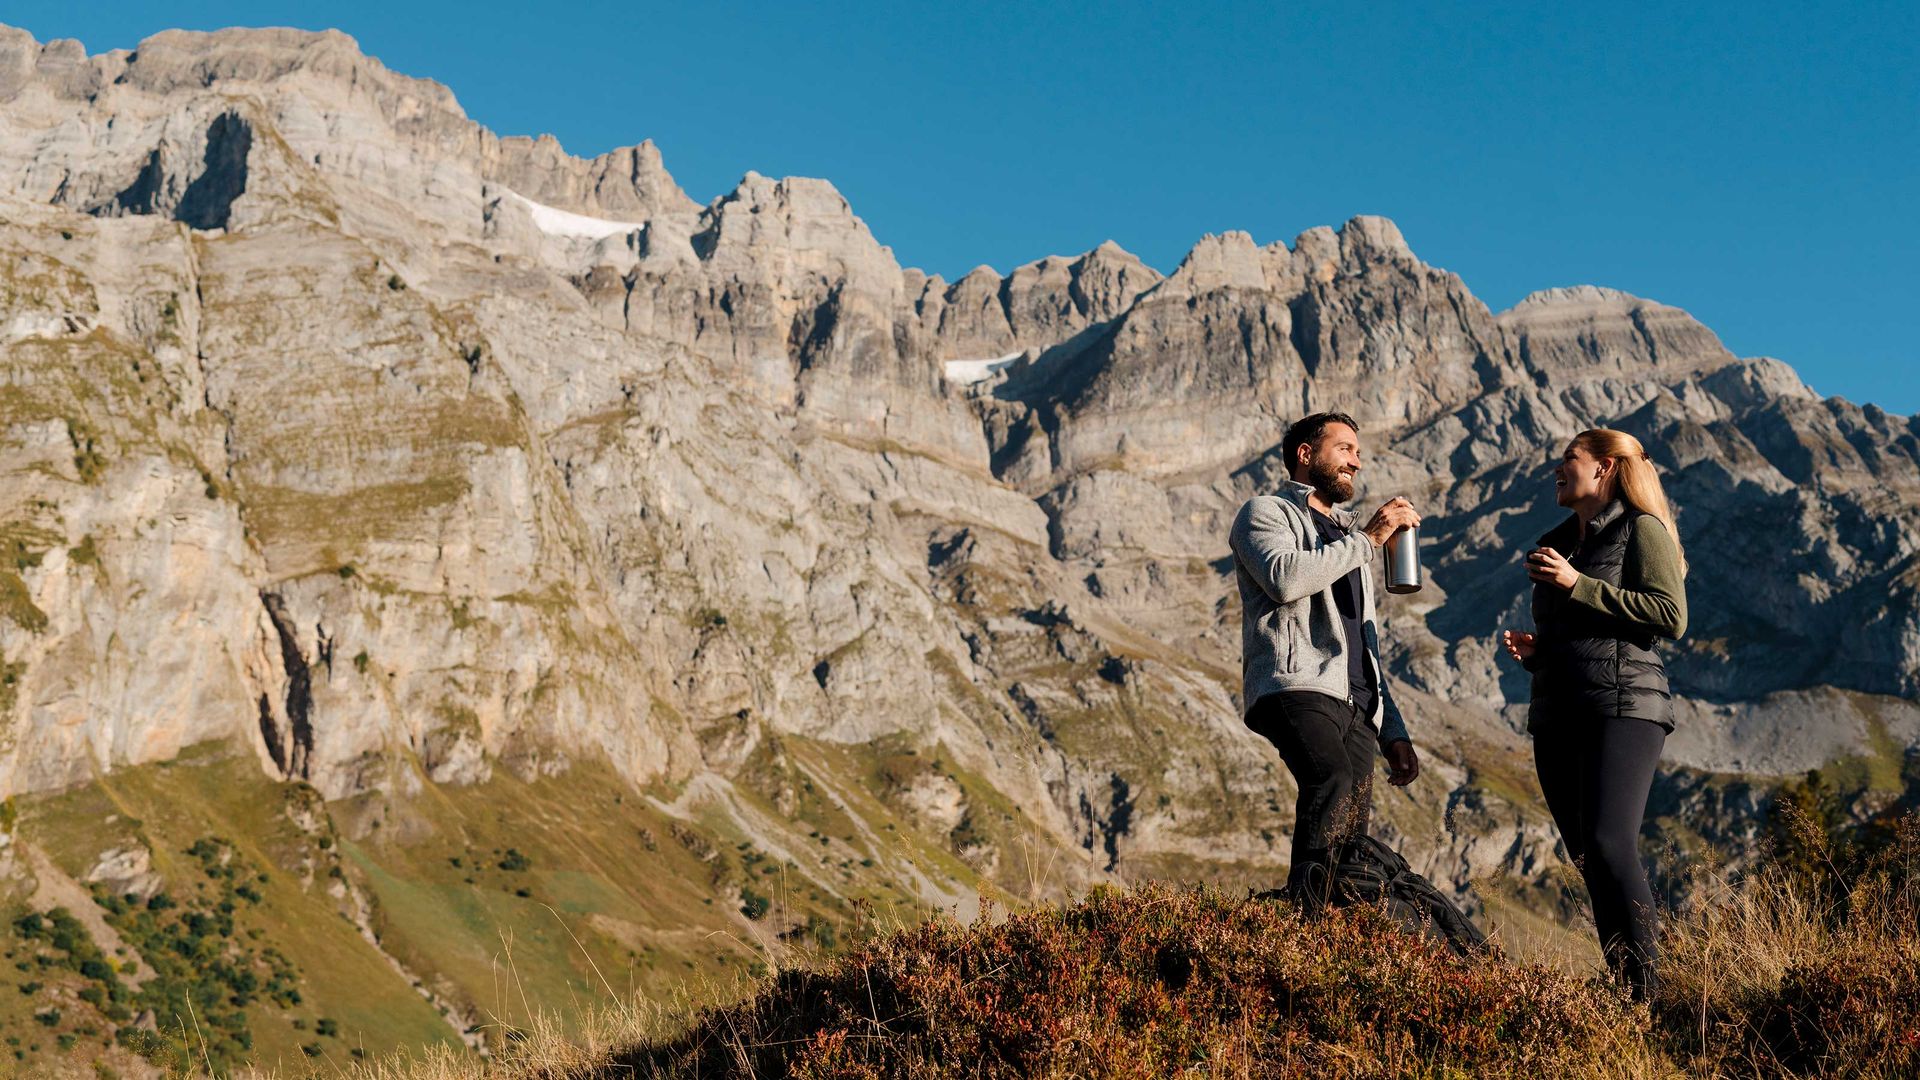 Zwei Wanderer machen eine Pause, trinken etwas und unterhalten sich auf einem Bergpfad mit majestätischen Felsgipfeln im Hintergrund.